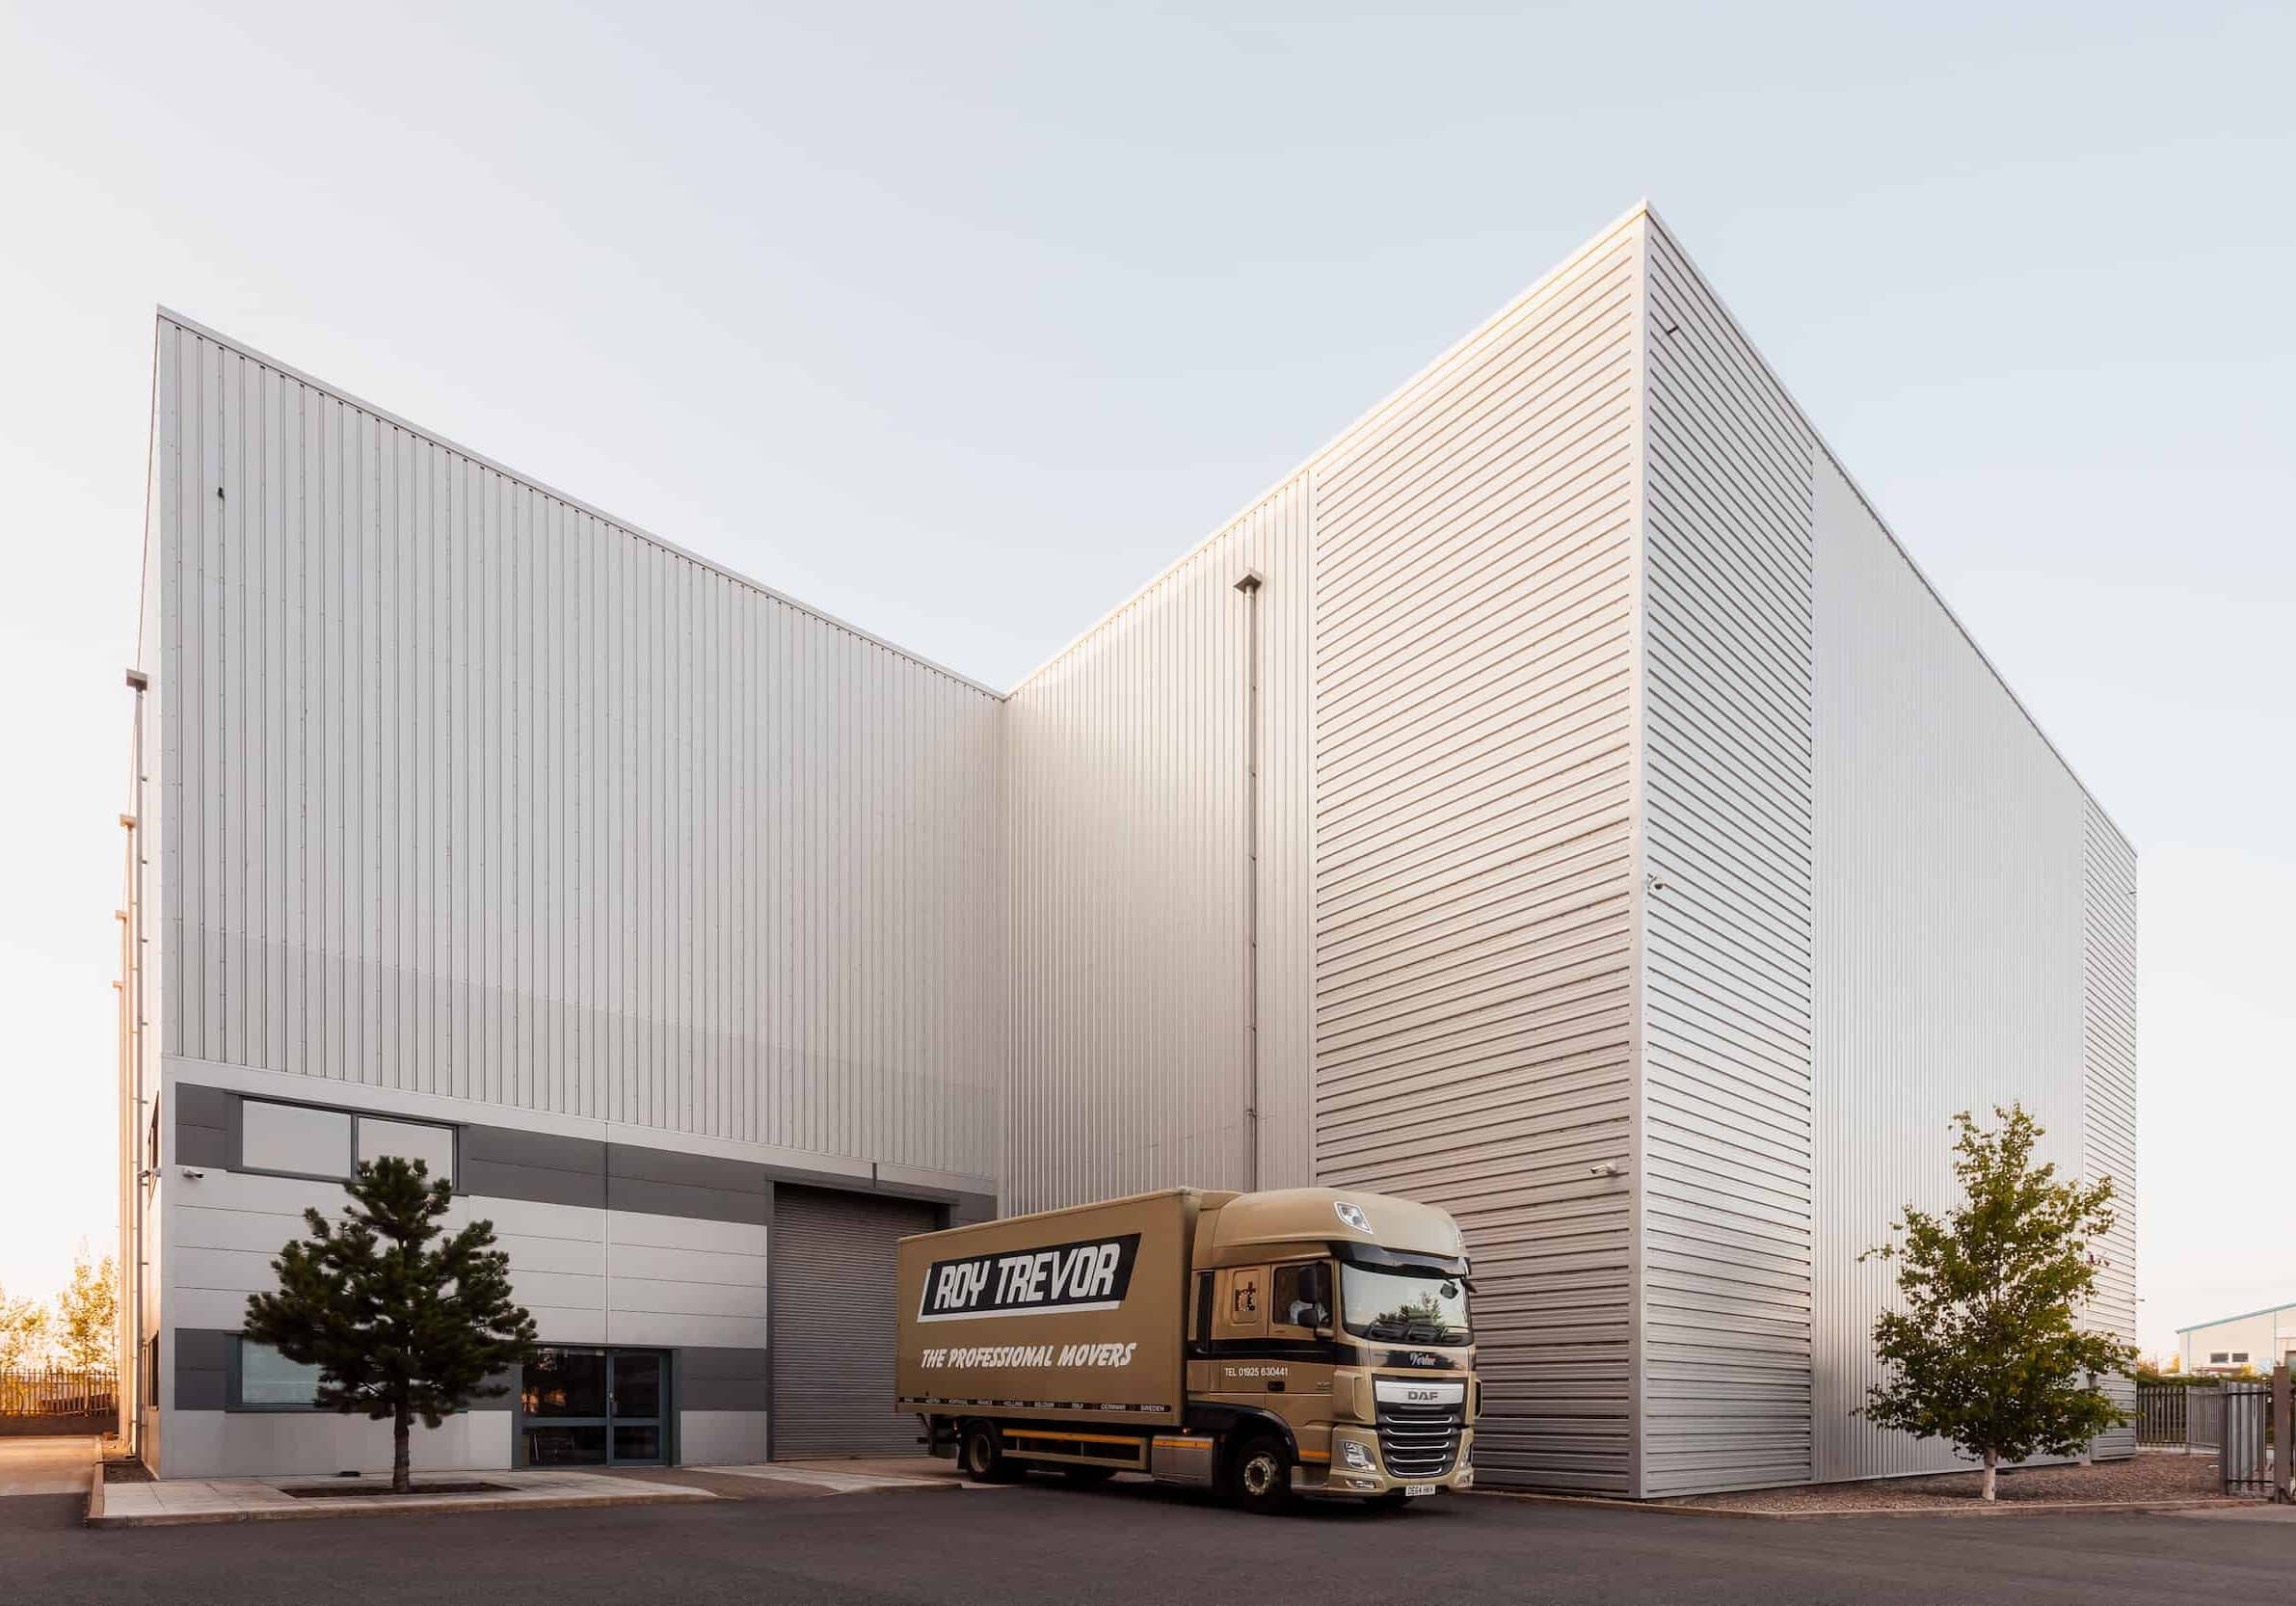 Truck-outside-Roy Trevor warehouse